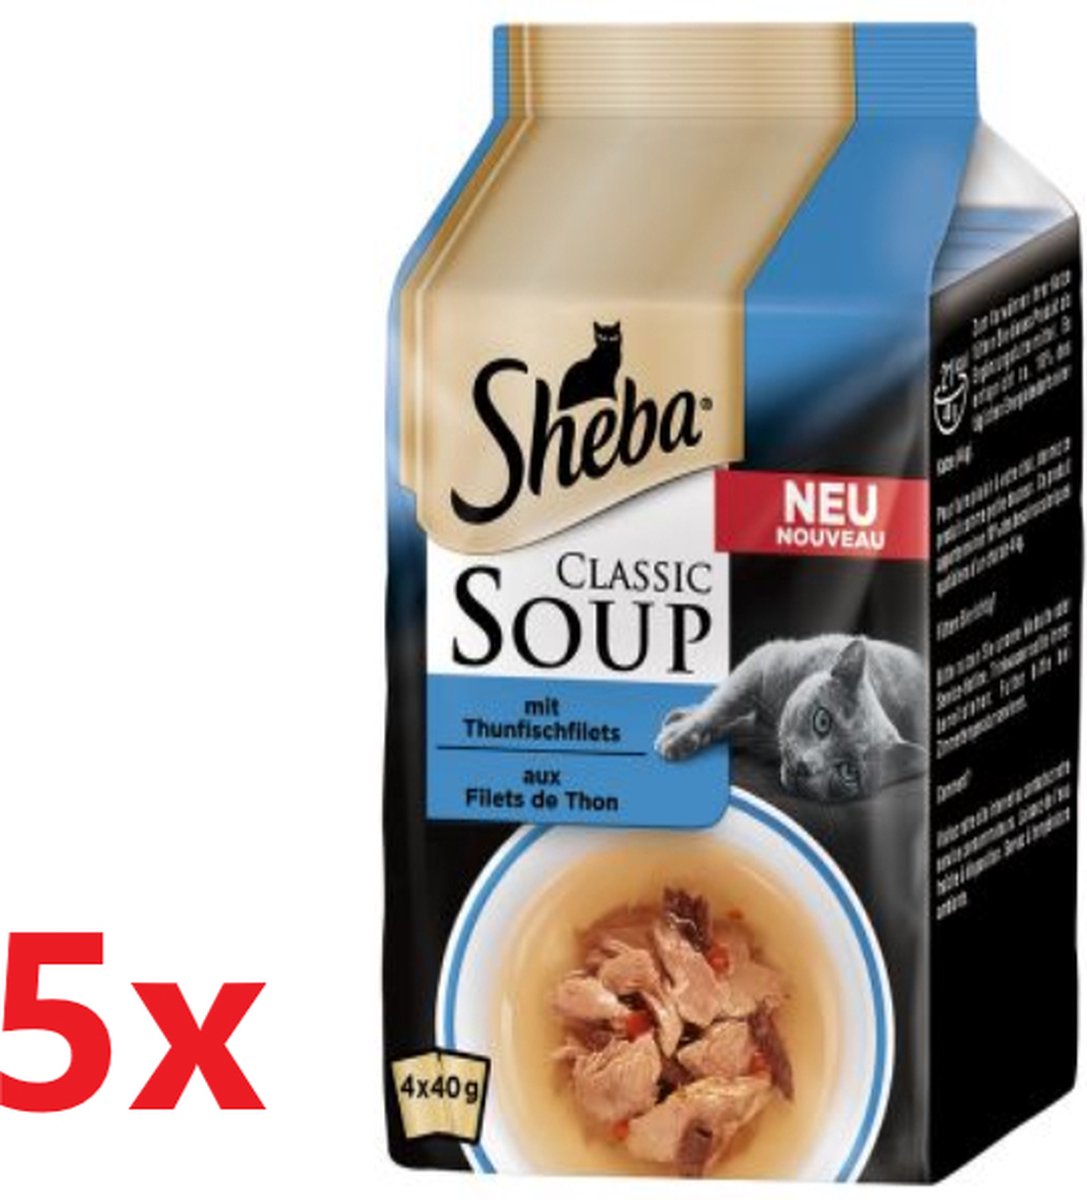 🐱 Analyse et infos sur Sheba Classic Soup Filets de thon (pâtée